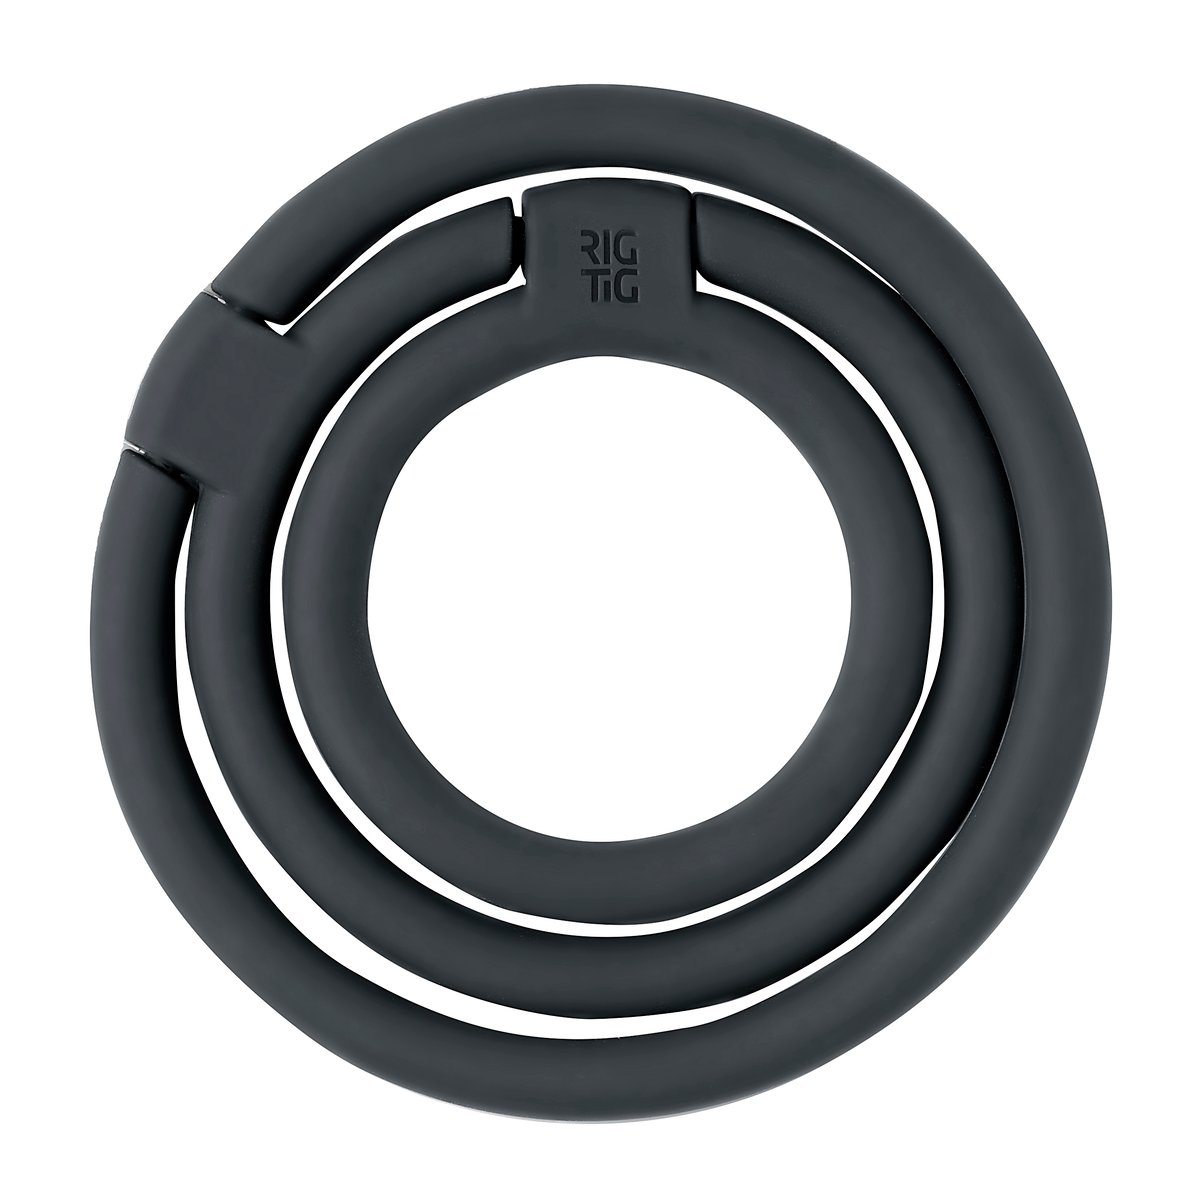 rig-tig dessous de plat circles ø13 cm noir